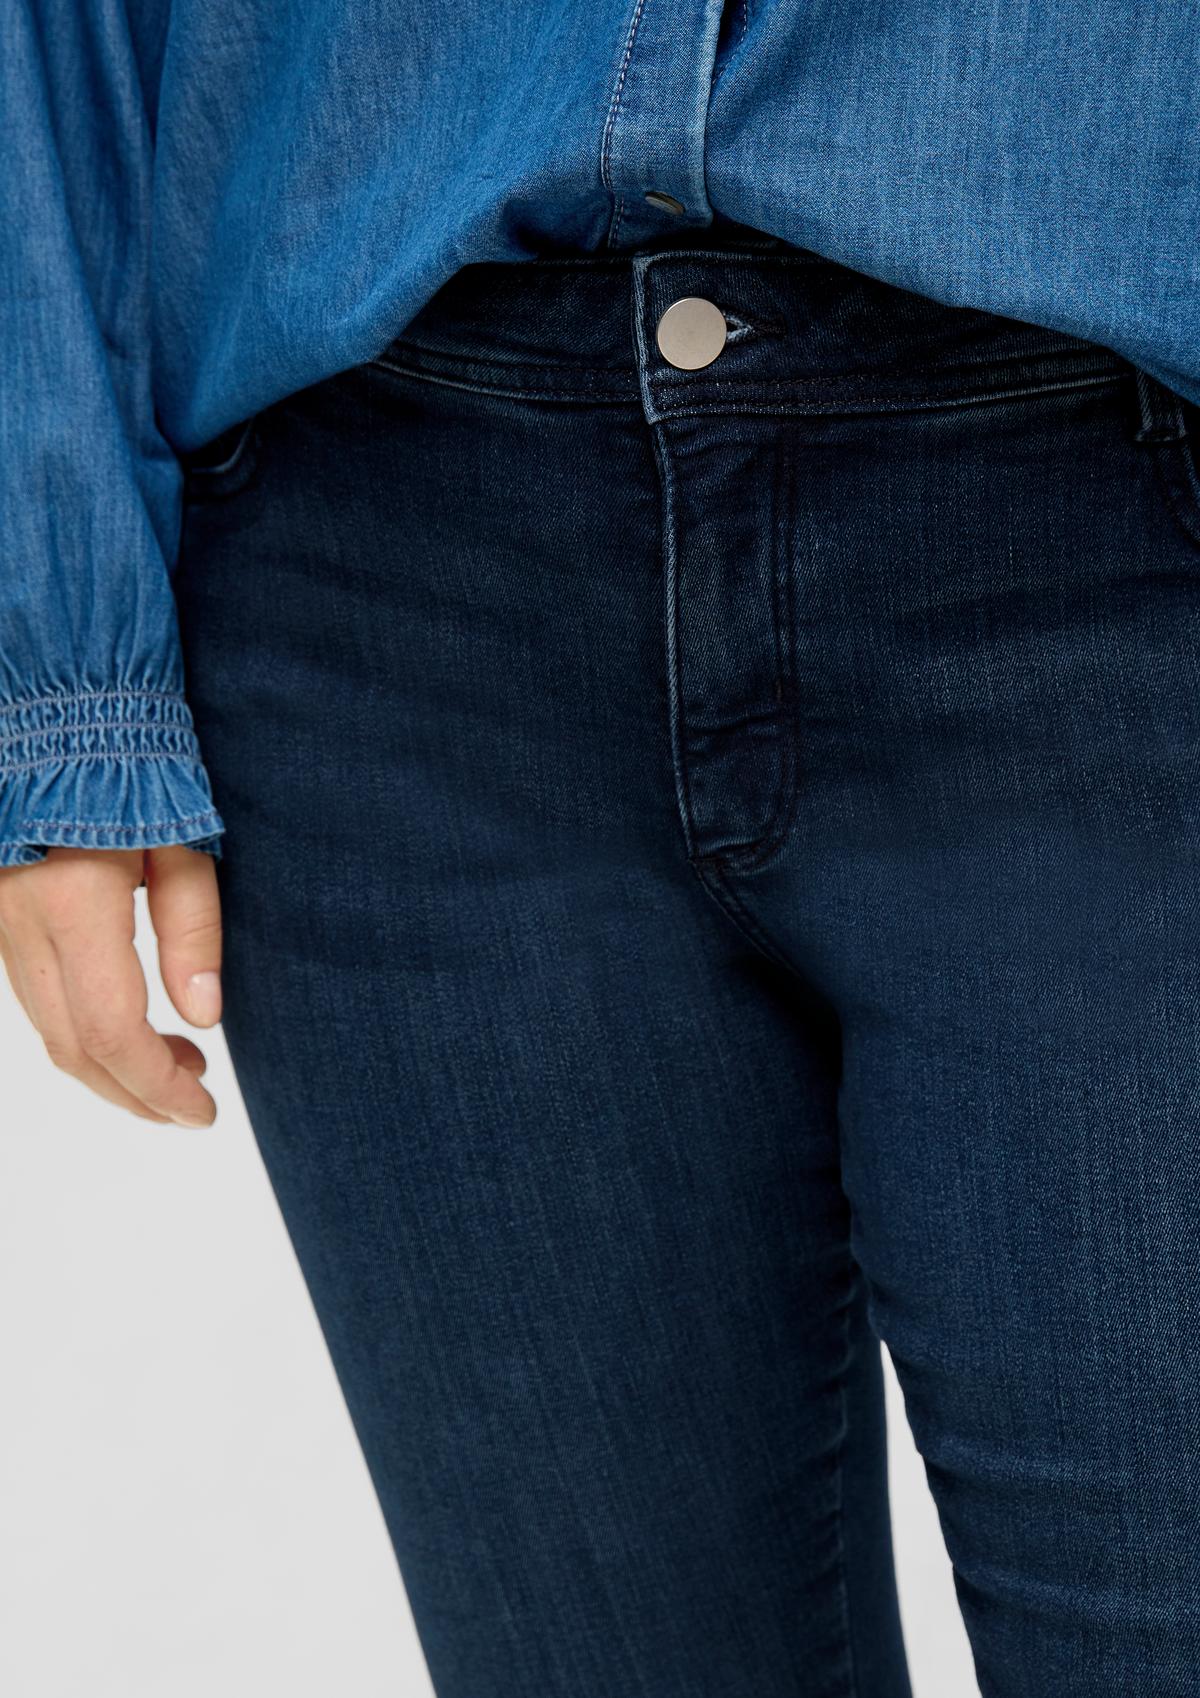 s.Oliver Skinny: jeans met garment wash